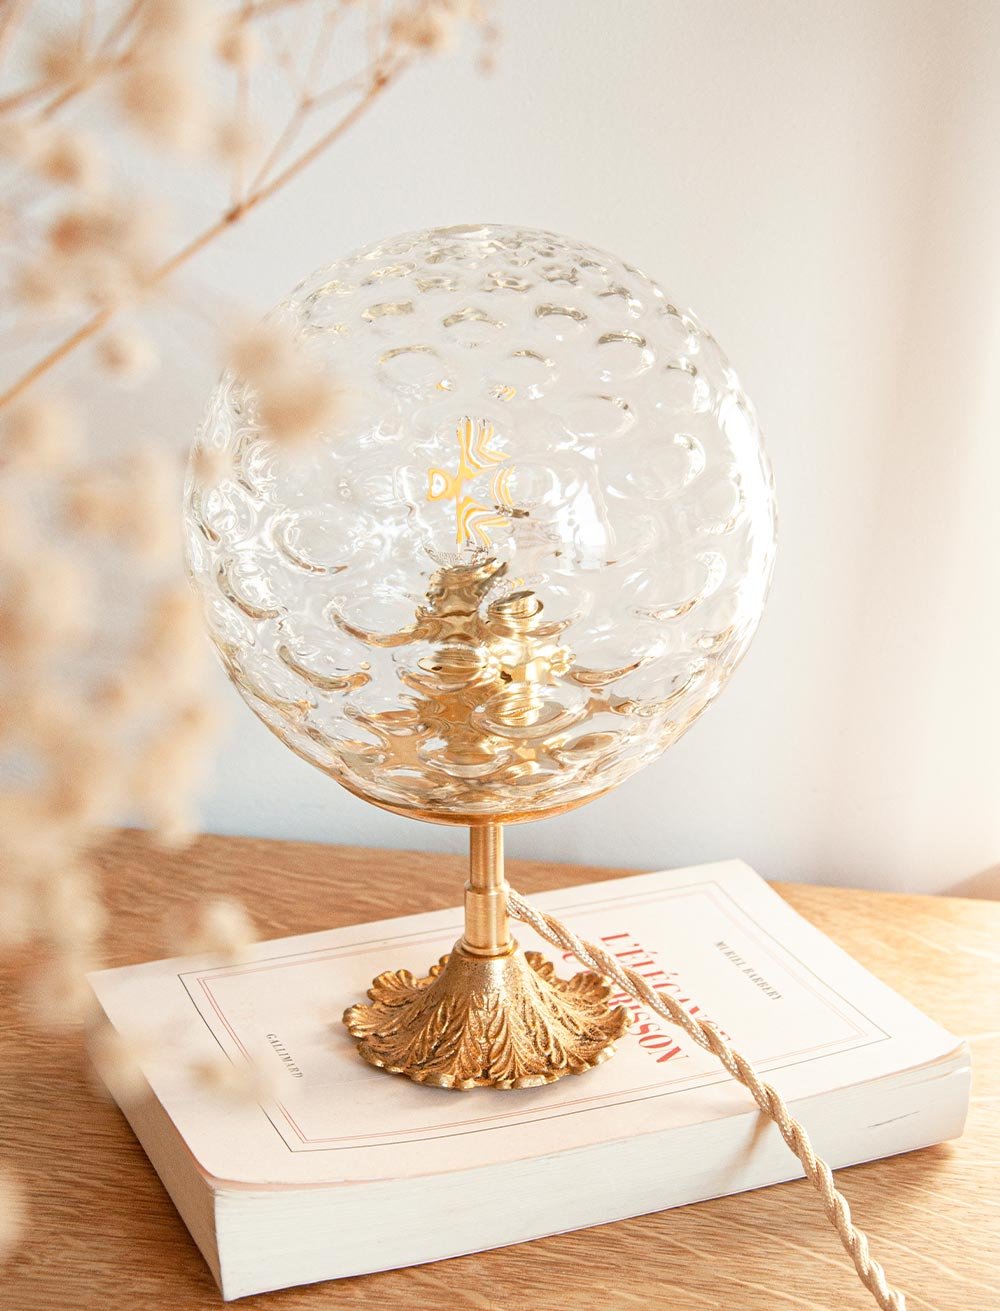 Lampe à poser globe vintage et pied laiton — Moris maison